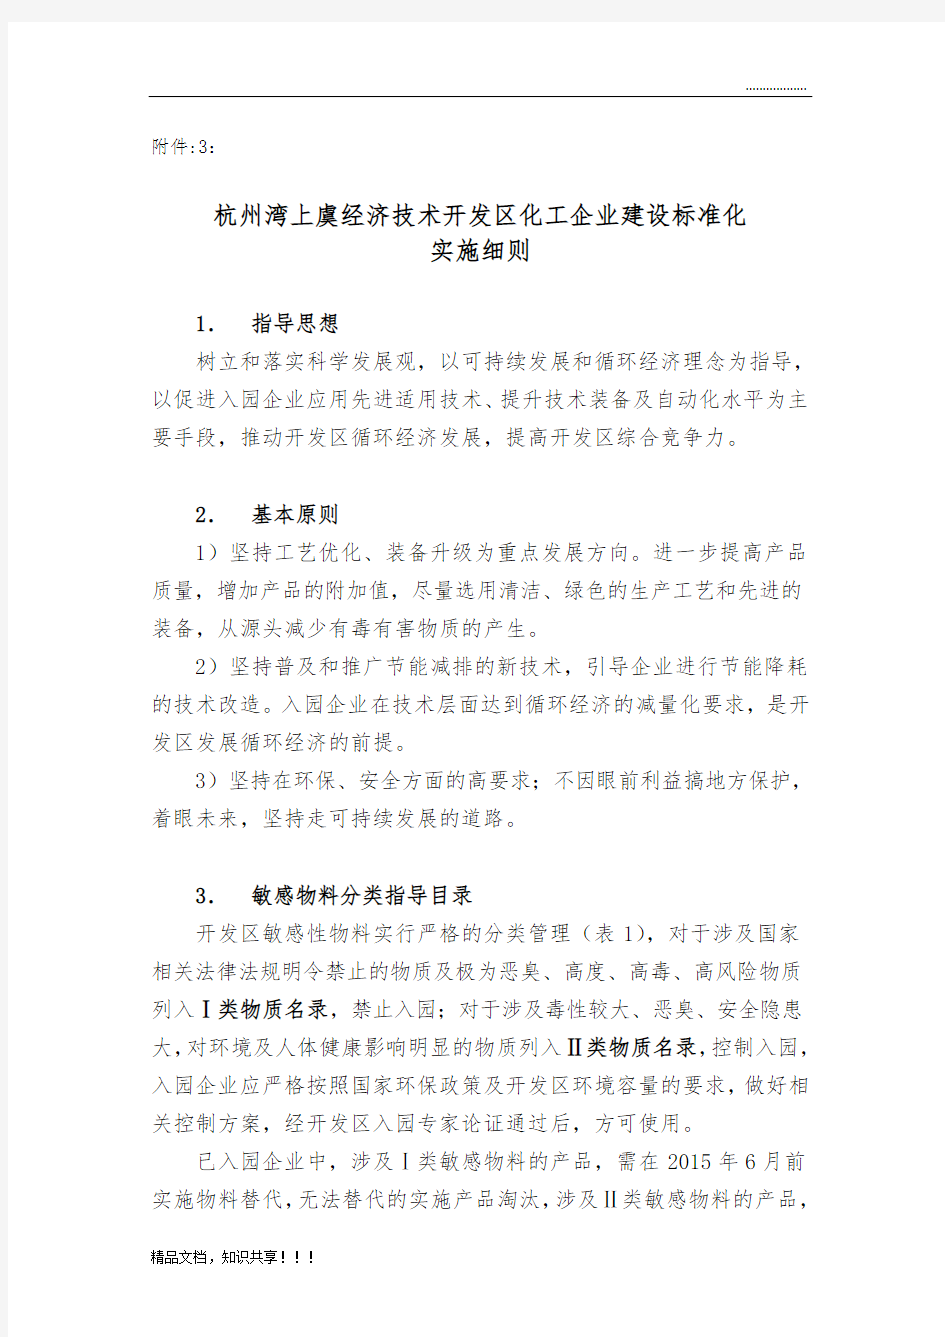 杭州湾上虞经济技术开发区化工企业建设标准化实施细则